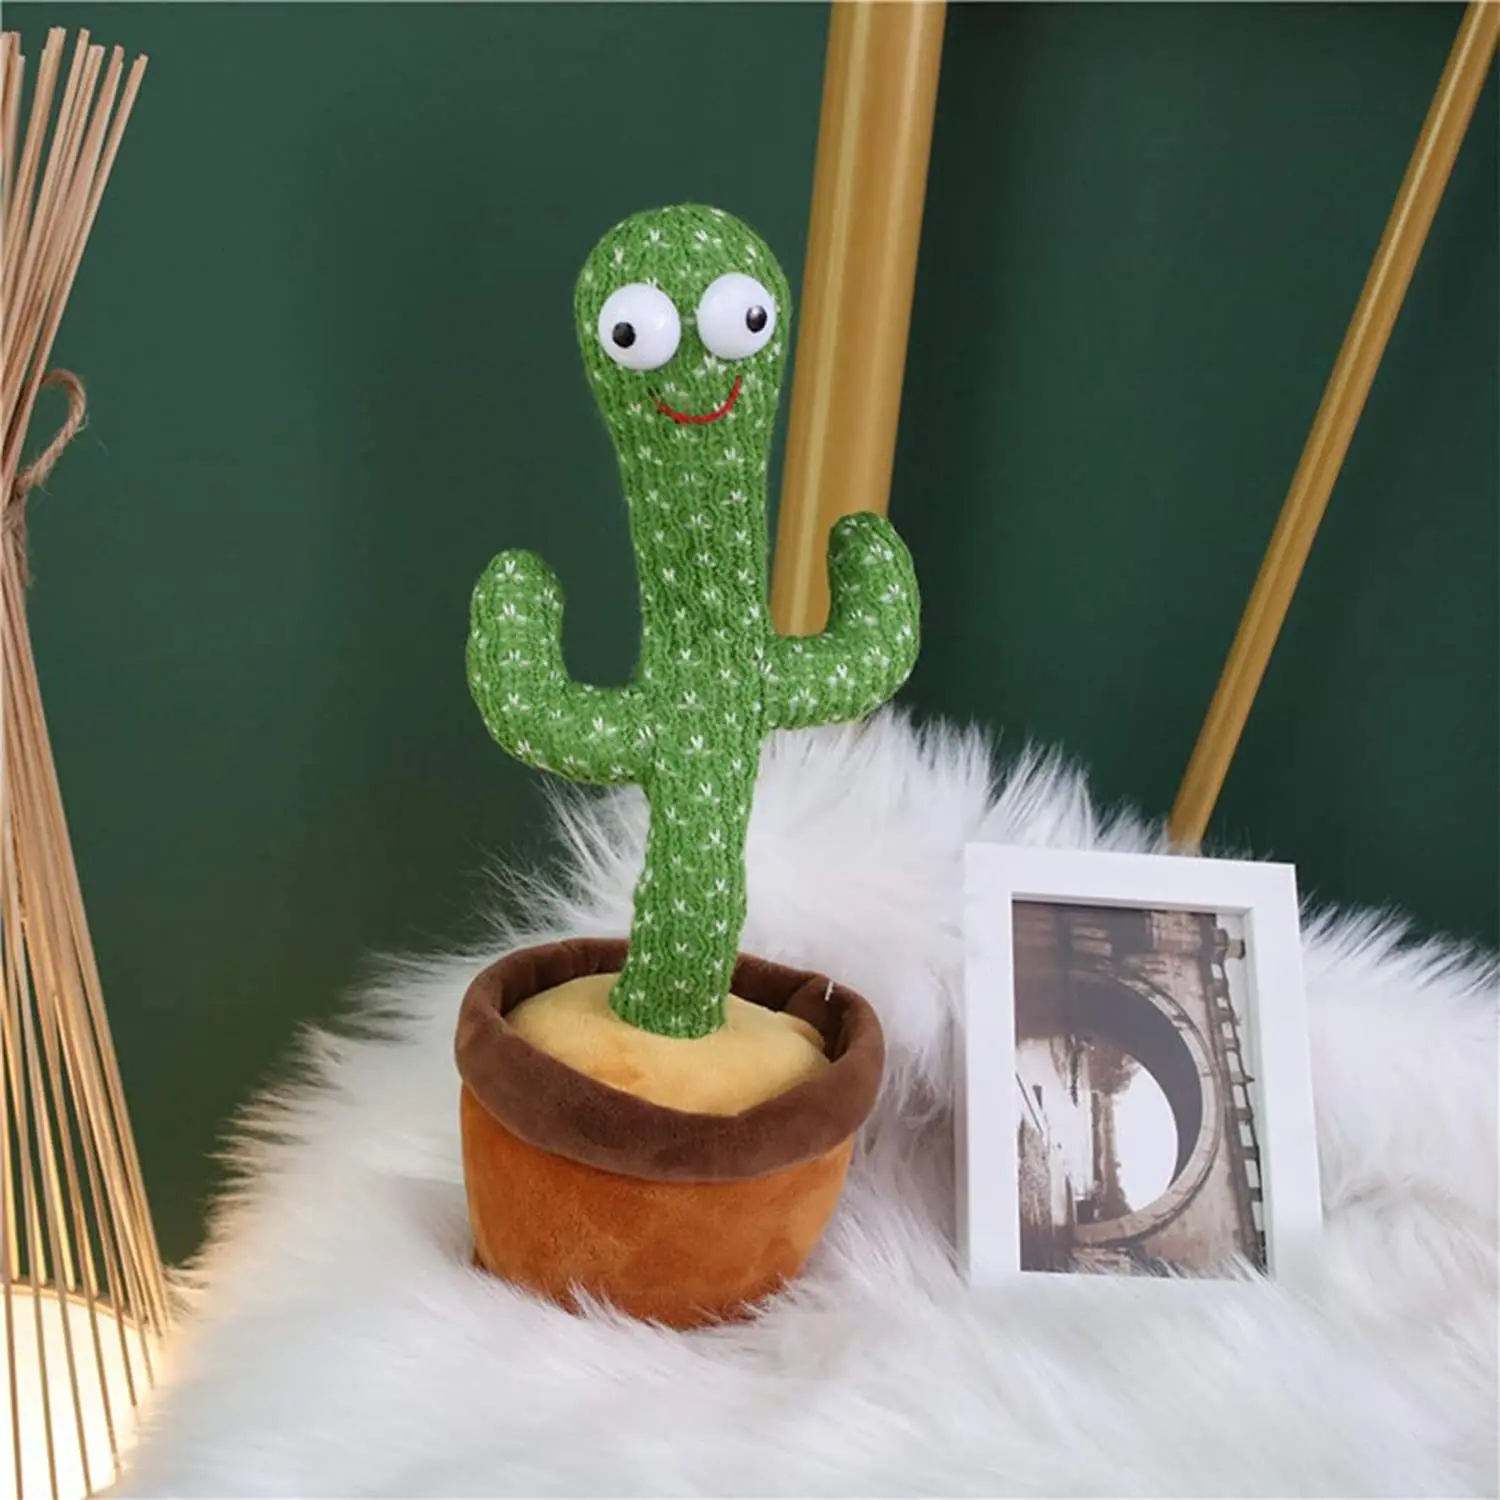 1X Kaktus Plüschtier Schaukelpuppe Grünes Kaktusspielzeug Für Schlafzimmer RS 